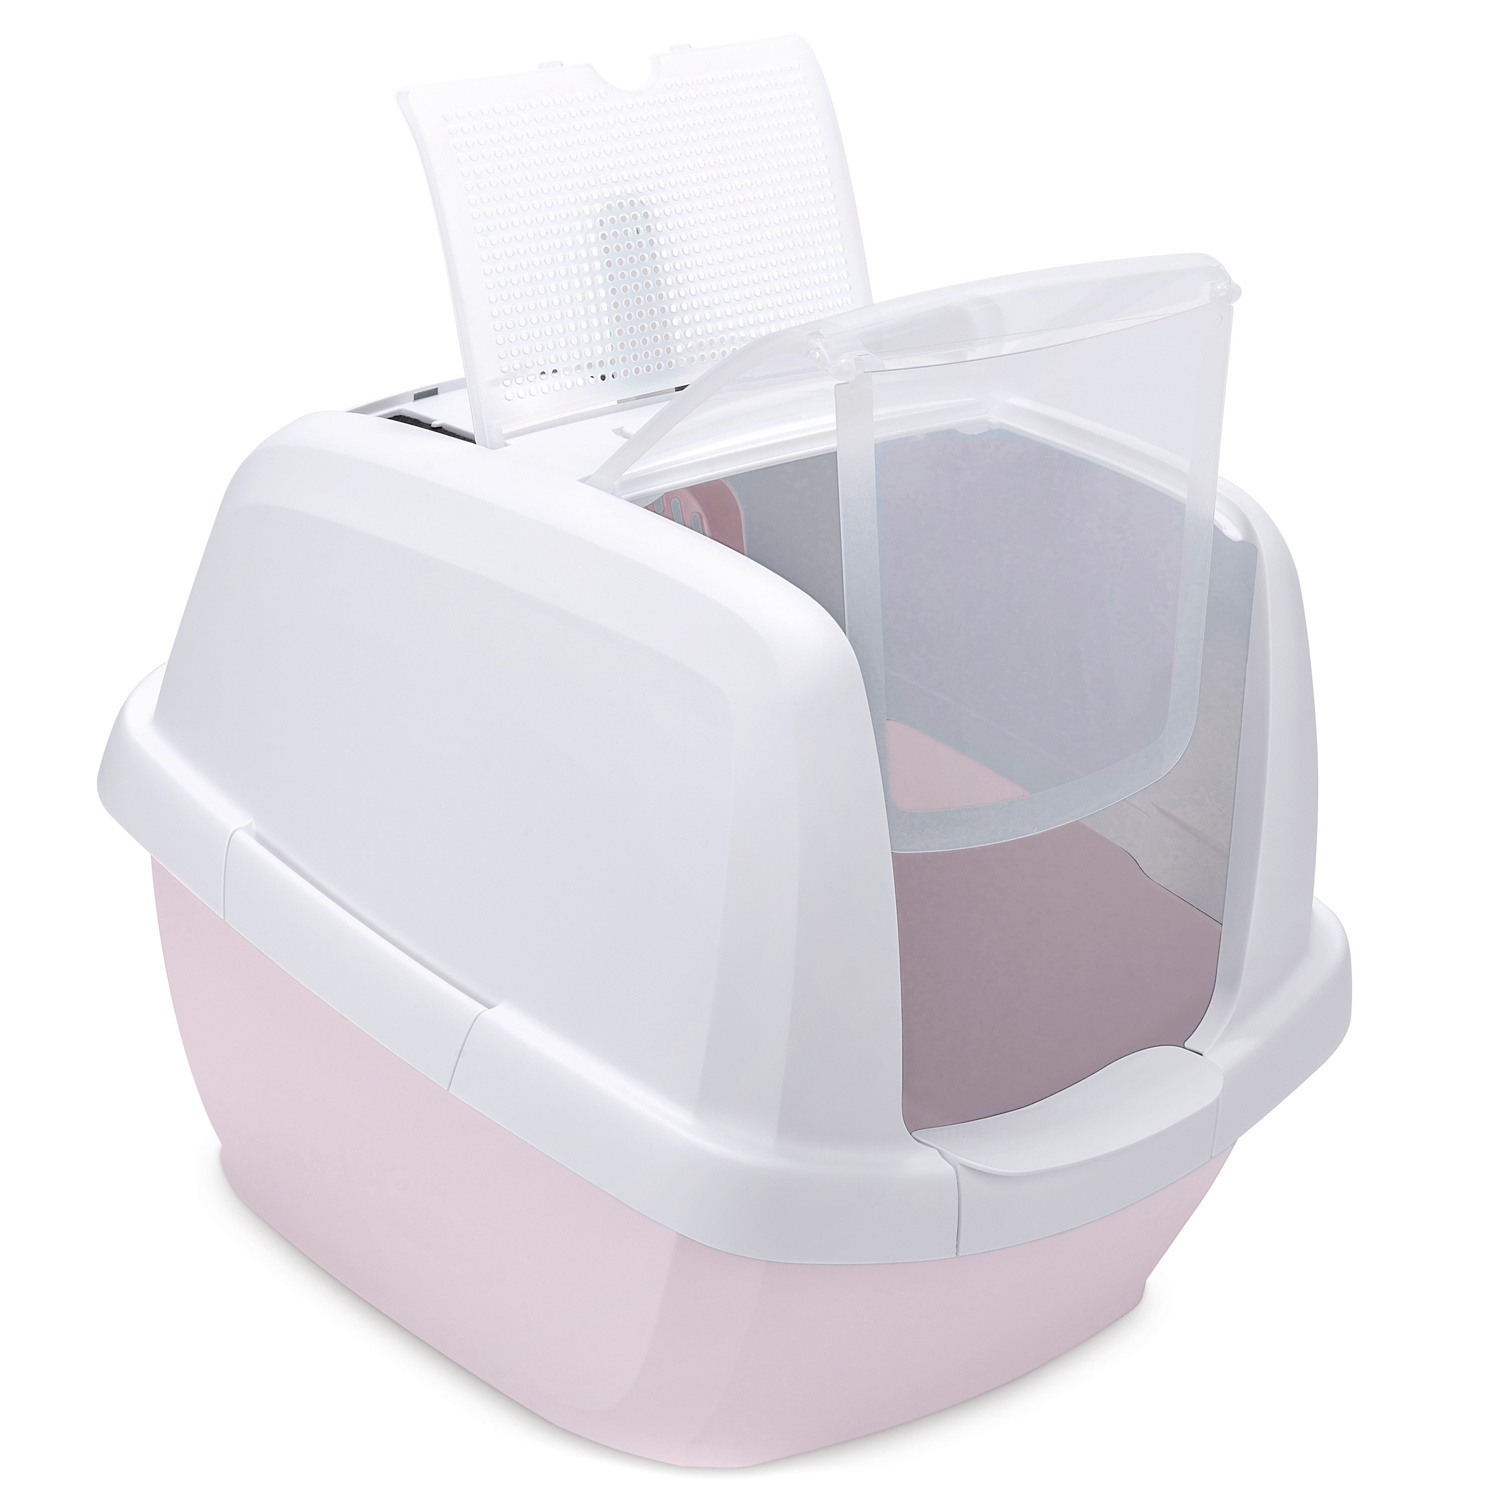 IMAC IMAC био-туалет для кошек , белый/нежно-розовый (2,85 кг) цена и фото